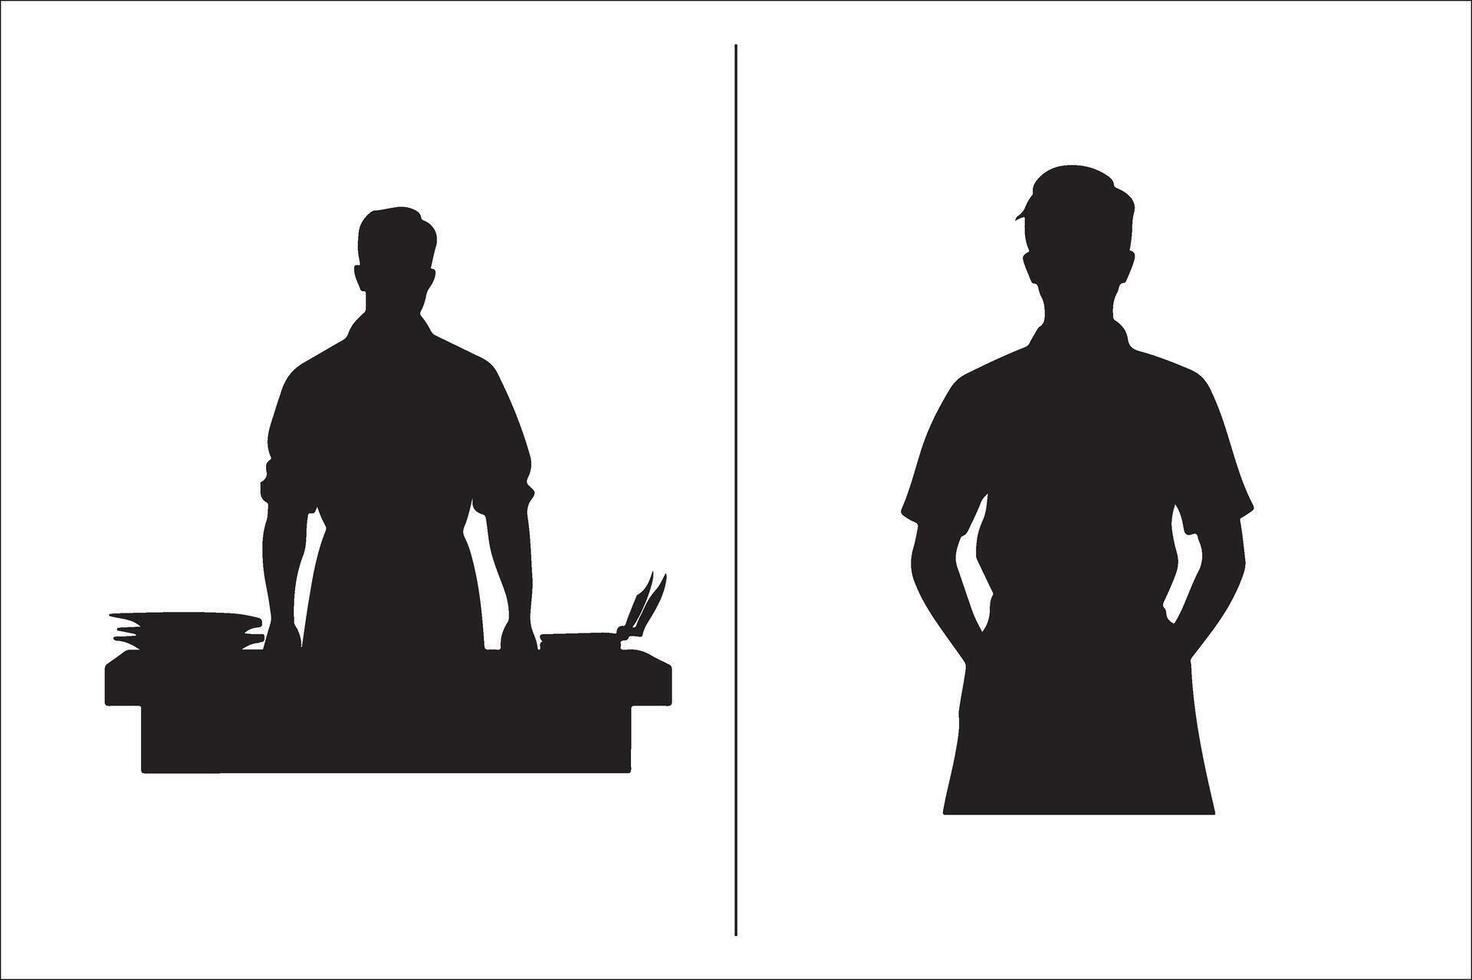 un barbecue et gril en relation silhouette vecteur